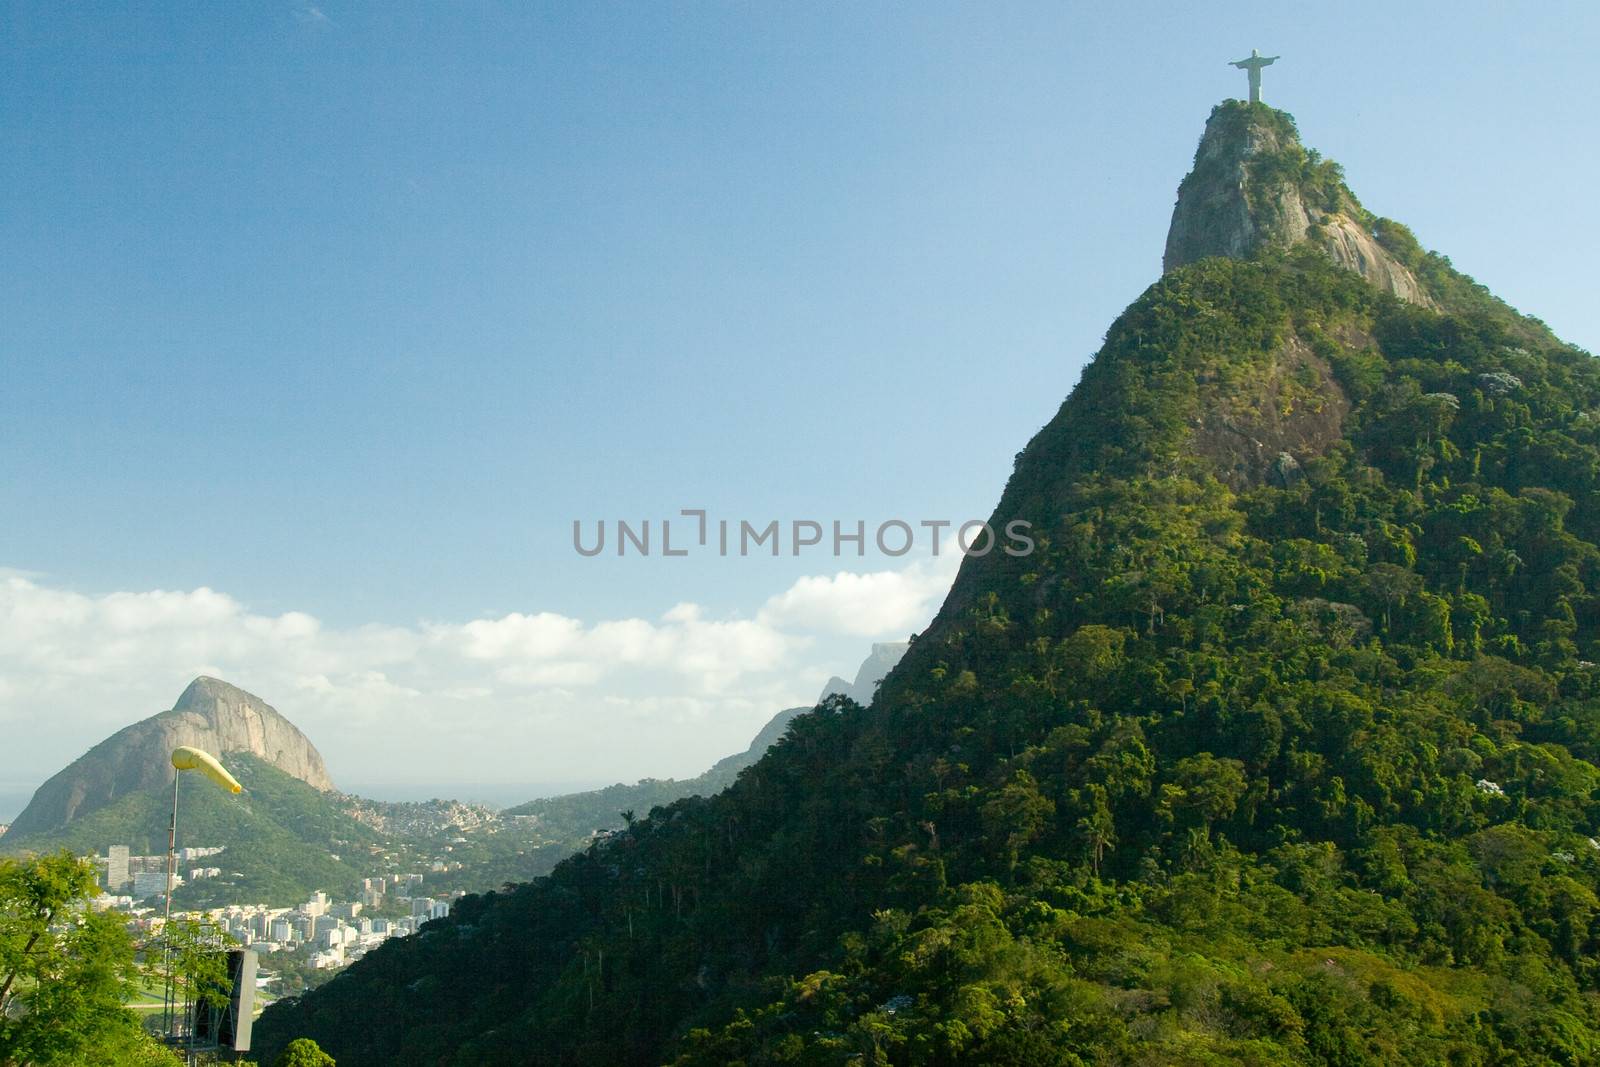 Christ The Redeemer on top of the Corcovado Mountain, Rio De Janeiro, Brazil